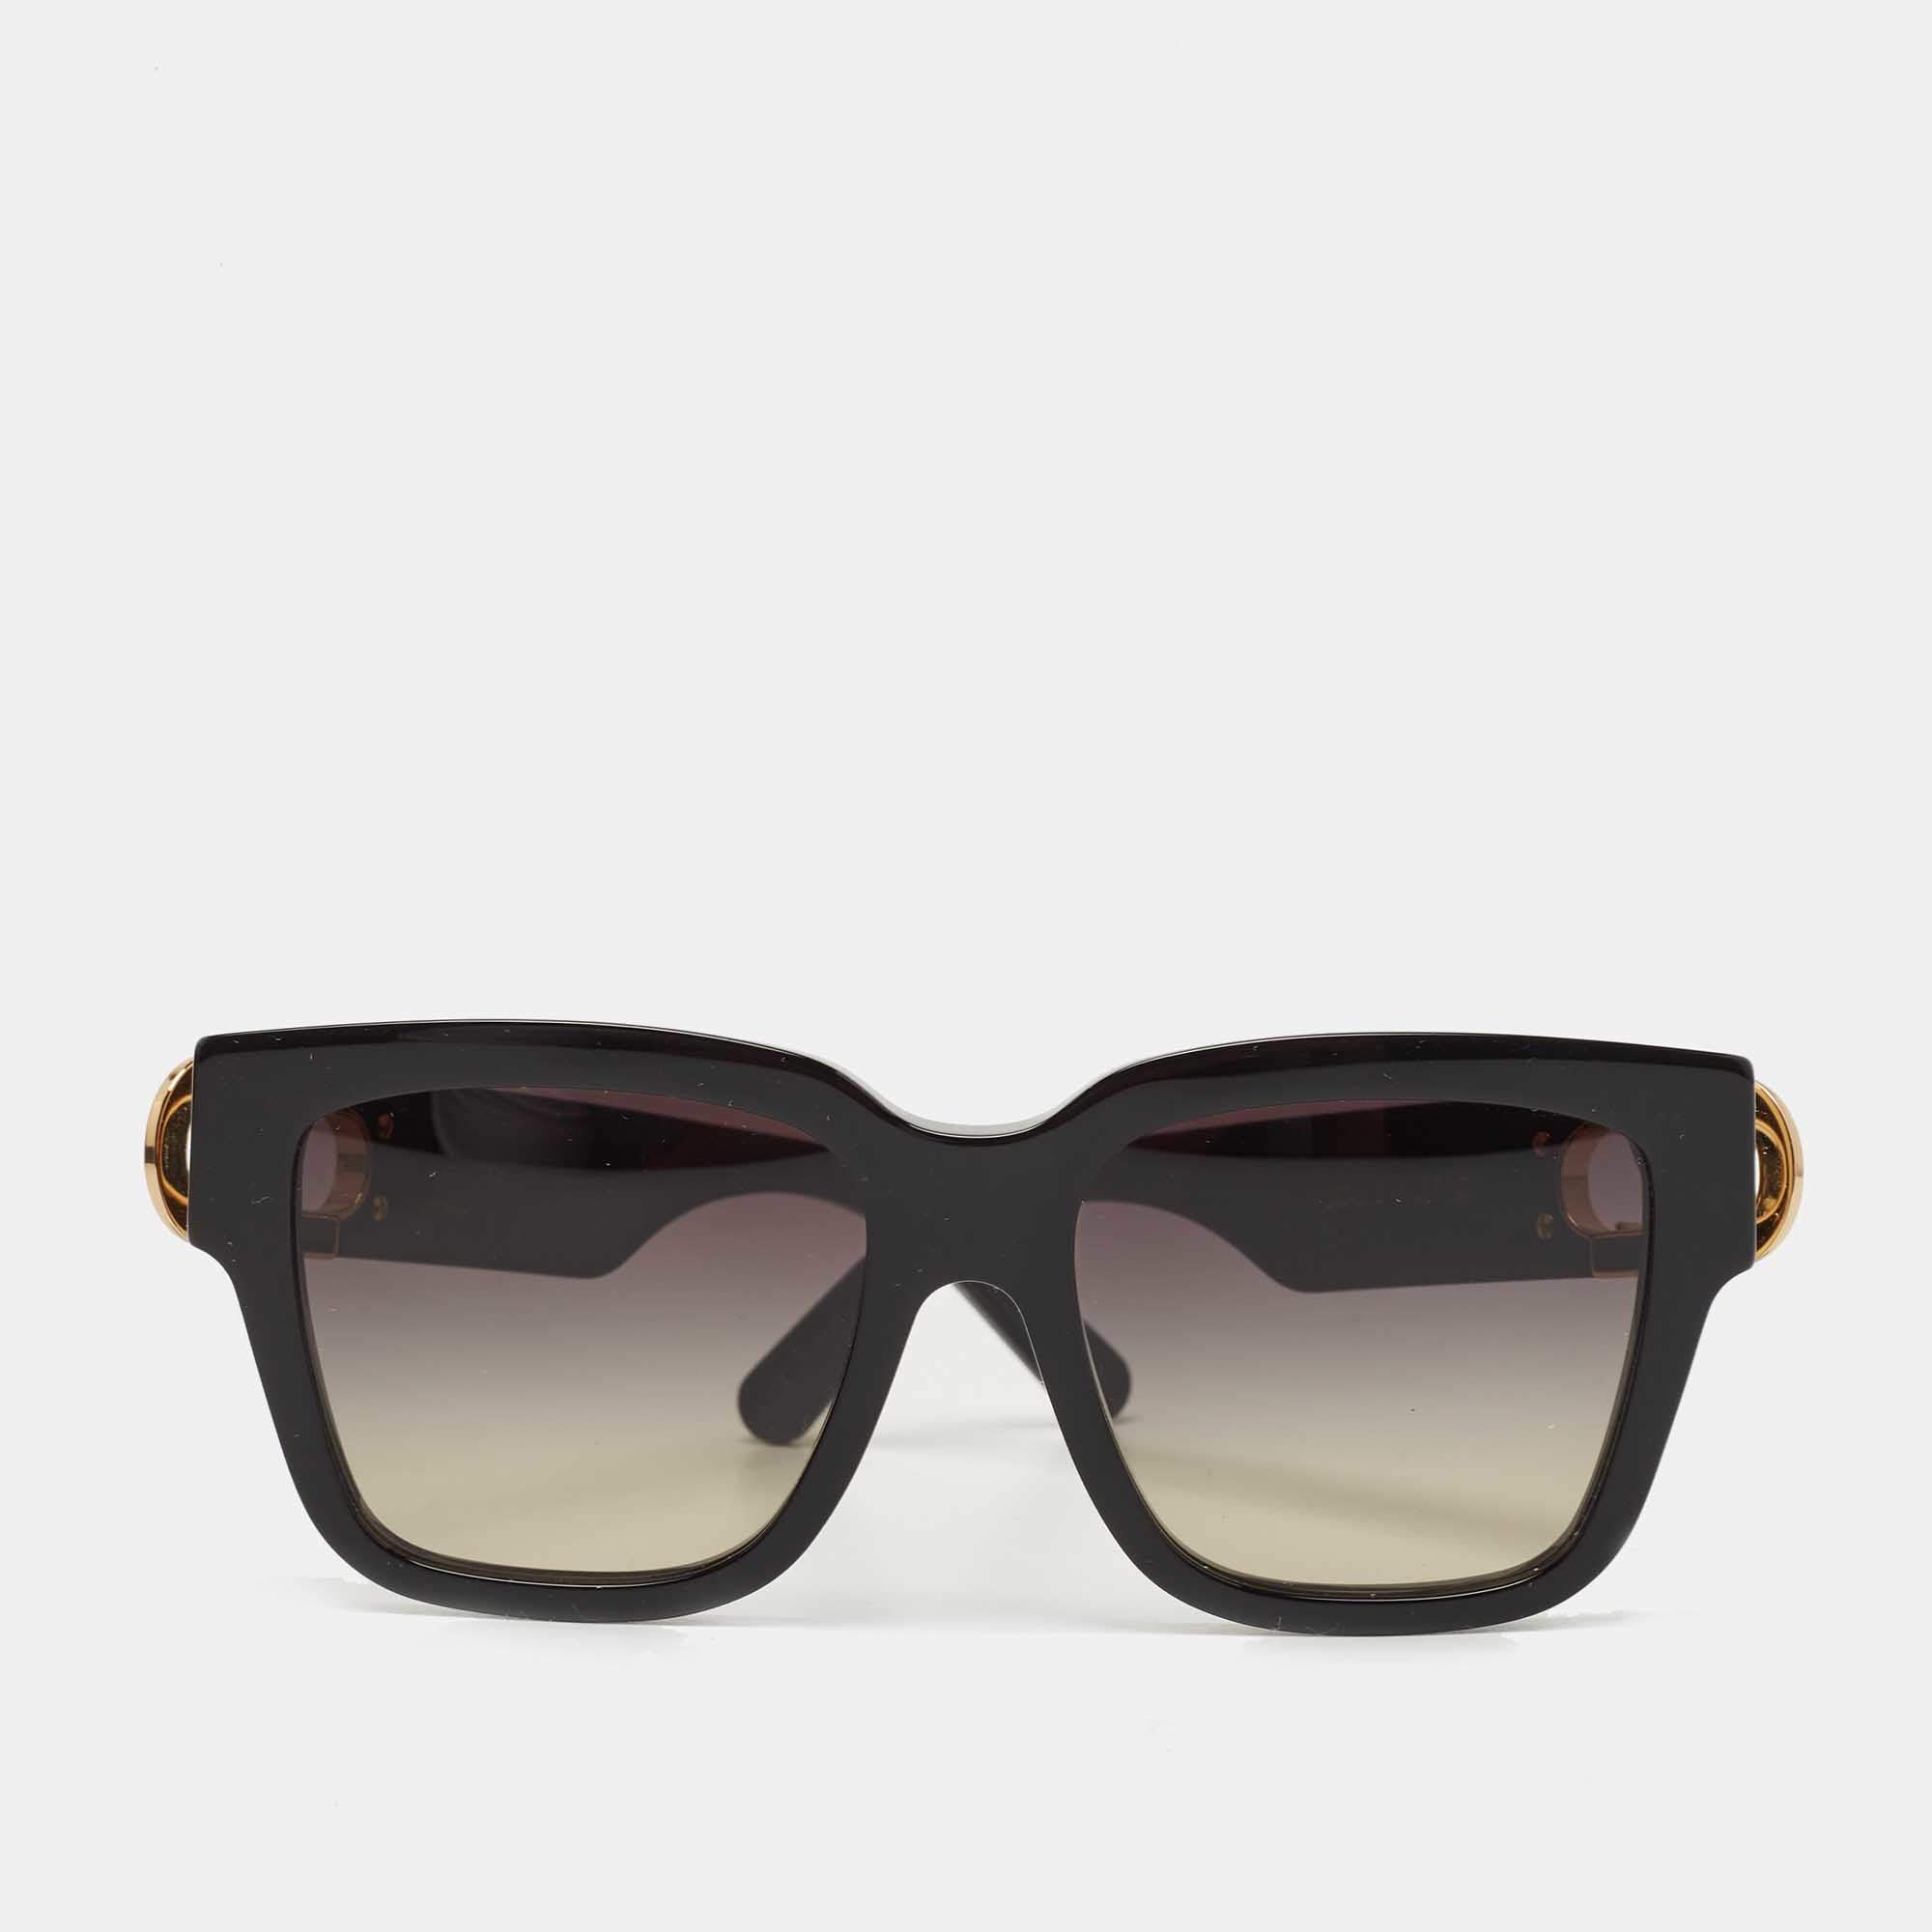 Shop Louis Vuitton Lv link pm square sunglasses (Z1567E, Z1566E, Z1567W,  Z1566W) by lifeisfun